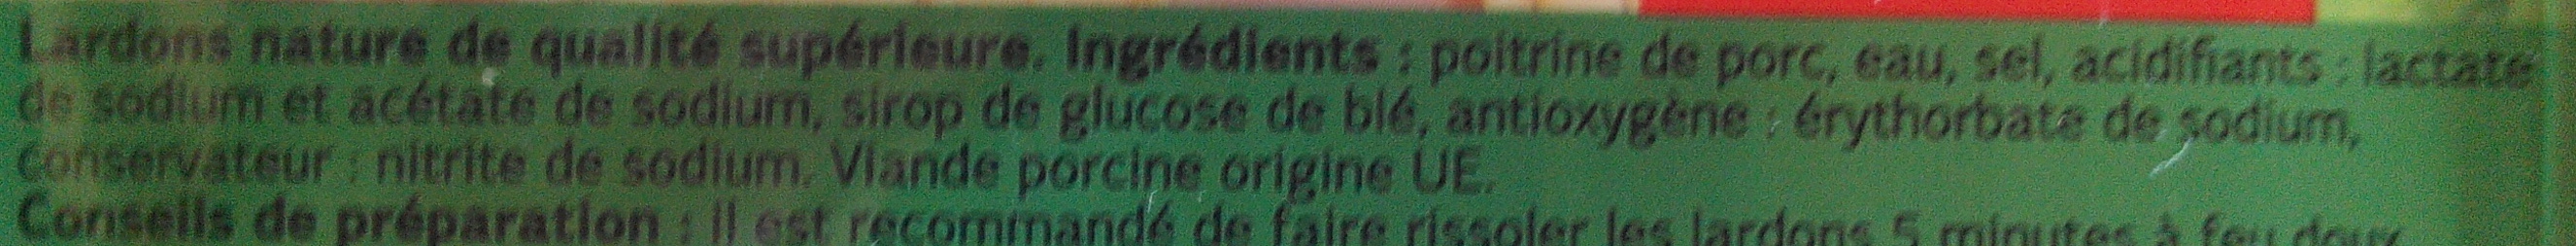 Lardons Nature (Qualité Supérieure) - Ingredients - fr